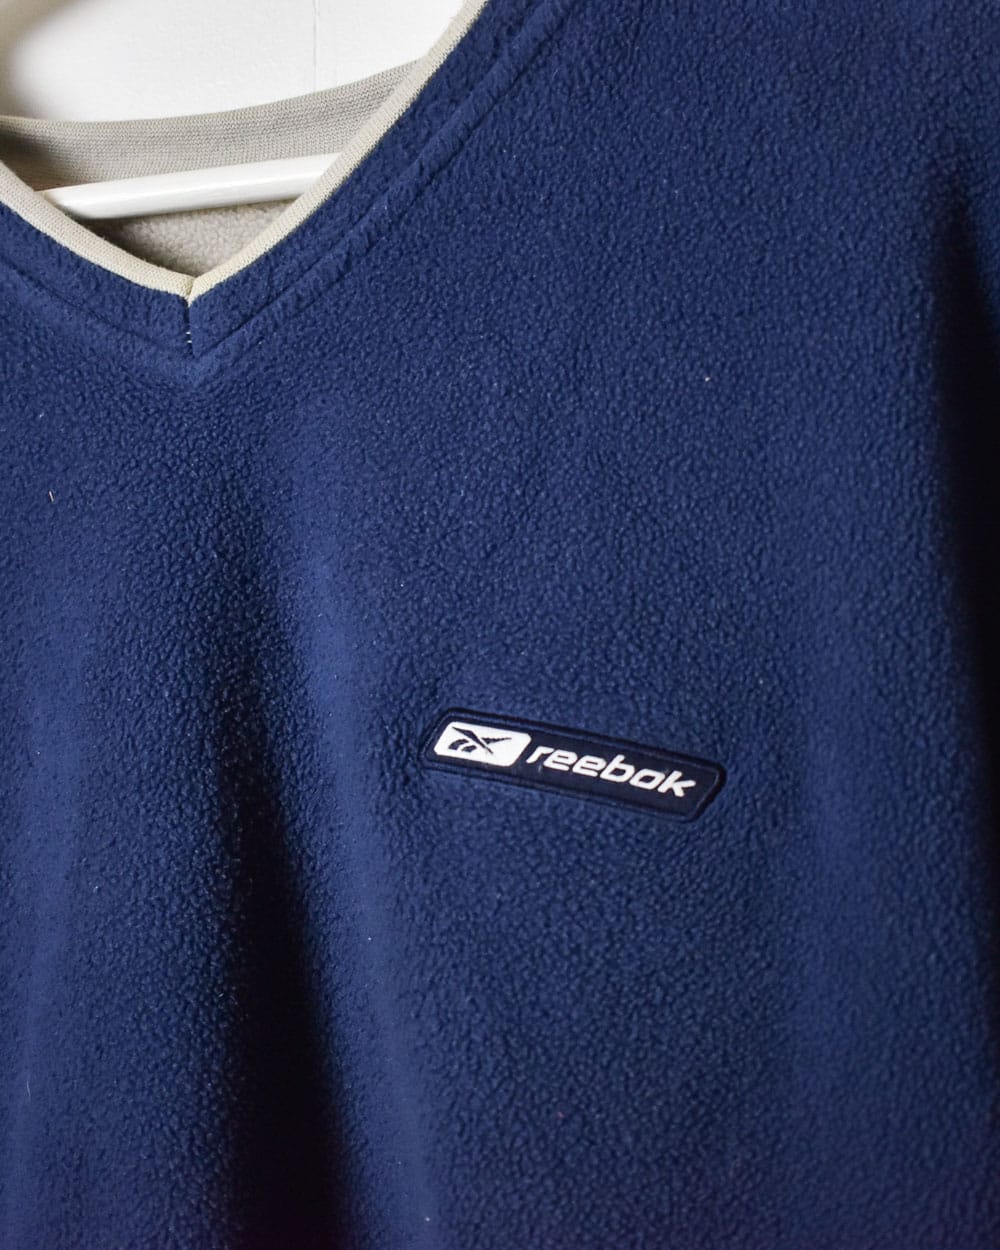 Navy Reebok Fleece Sweatshirt - Large